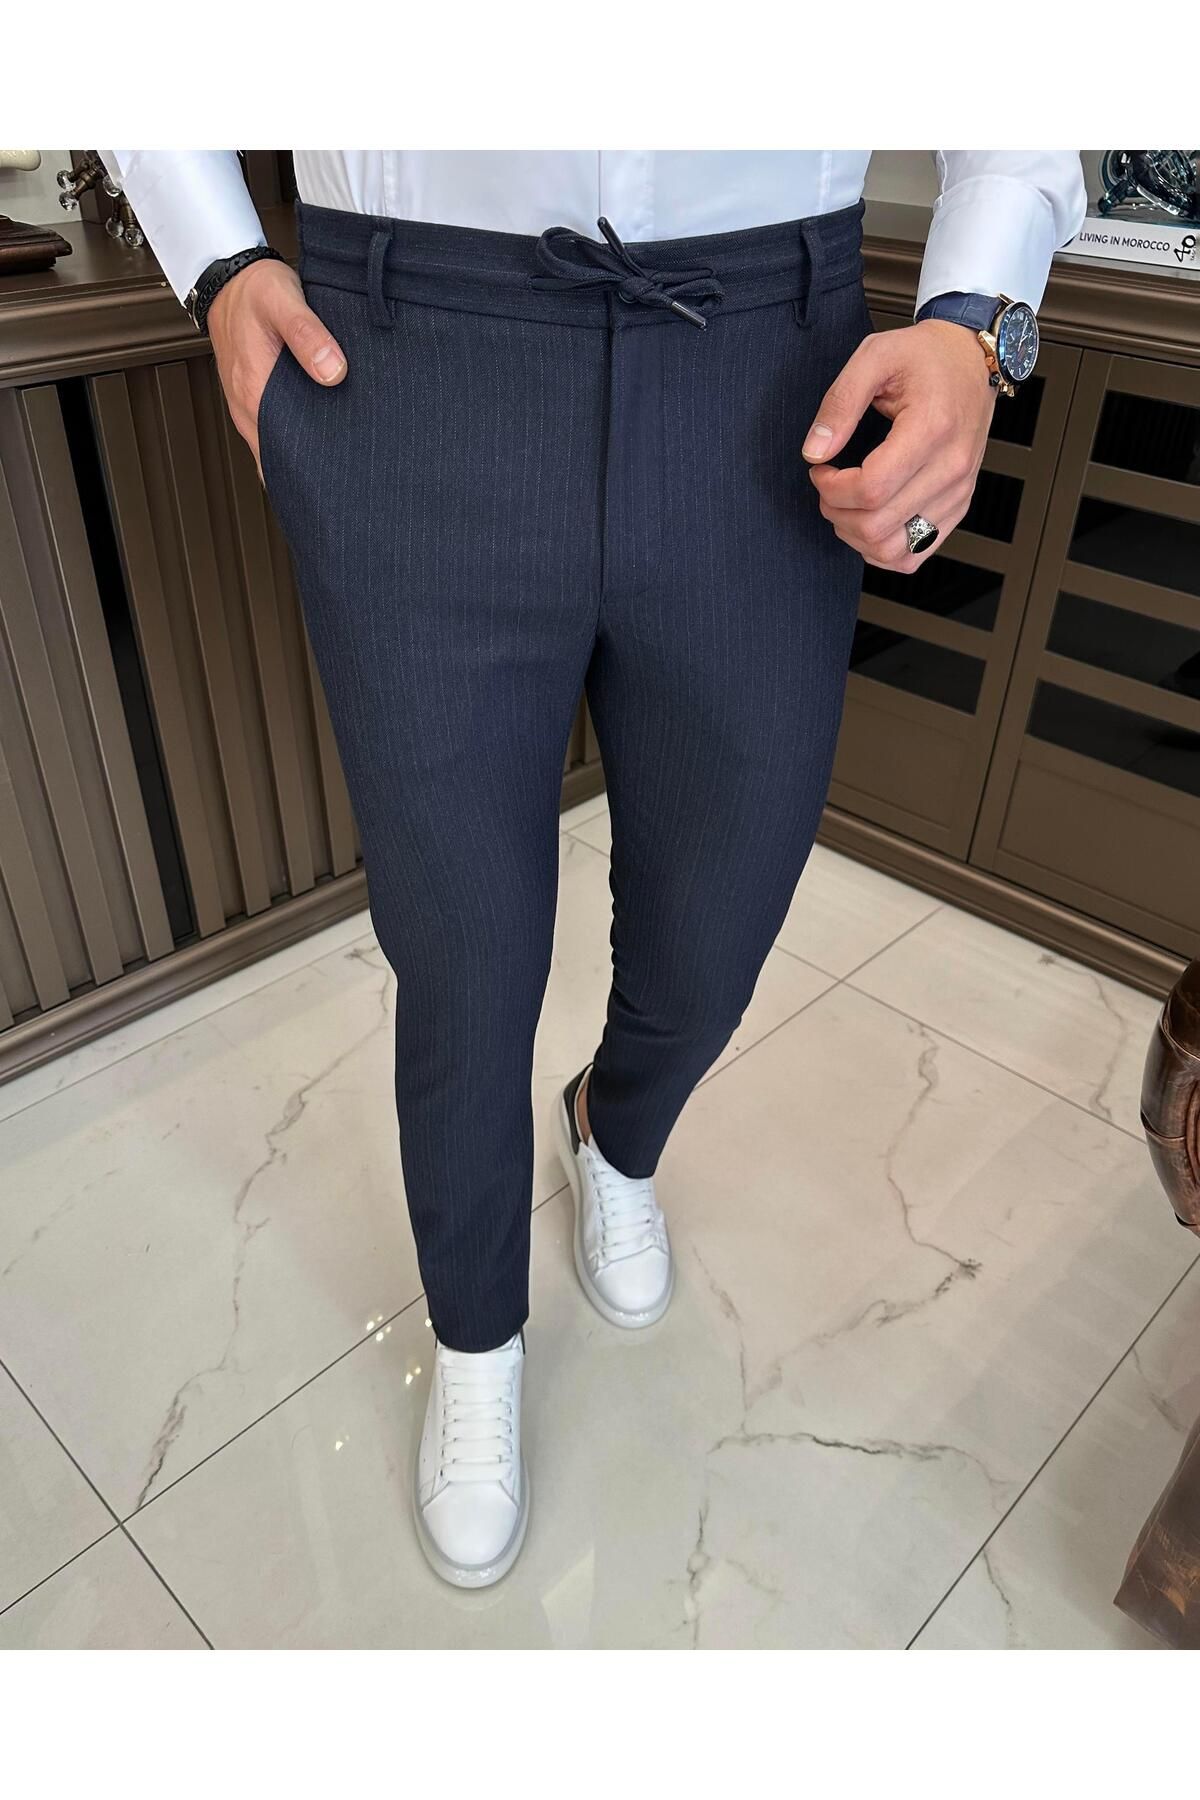 TerziAdemAltun İtalyan stil slim fit çizgili bel bağlamalı erkek pantolon lacivert T10694